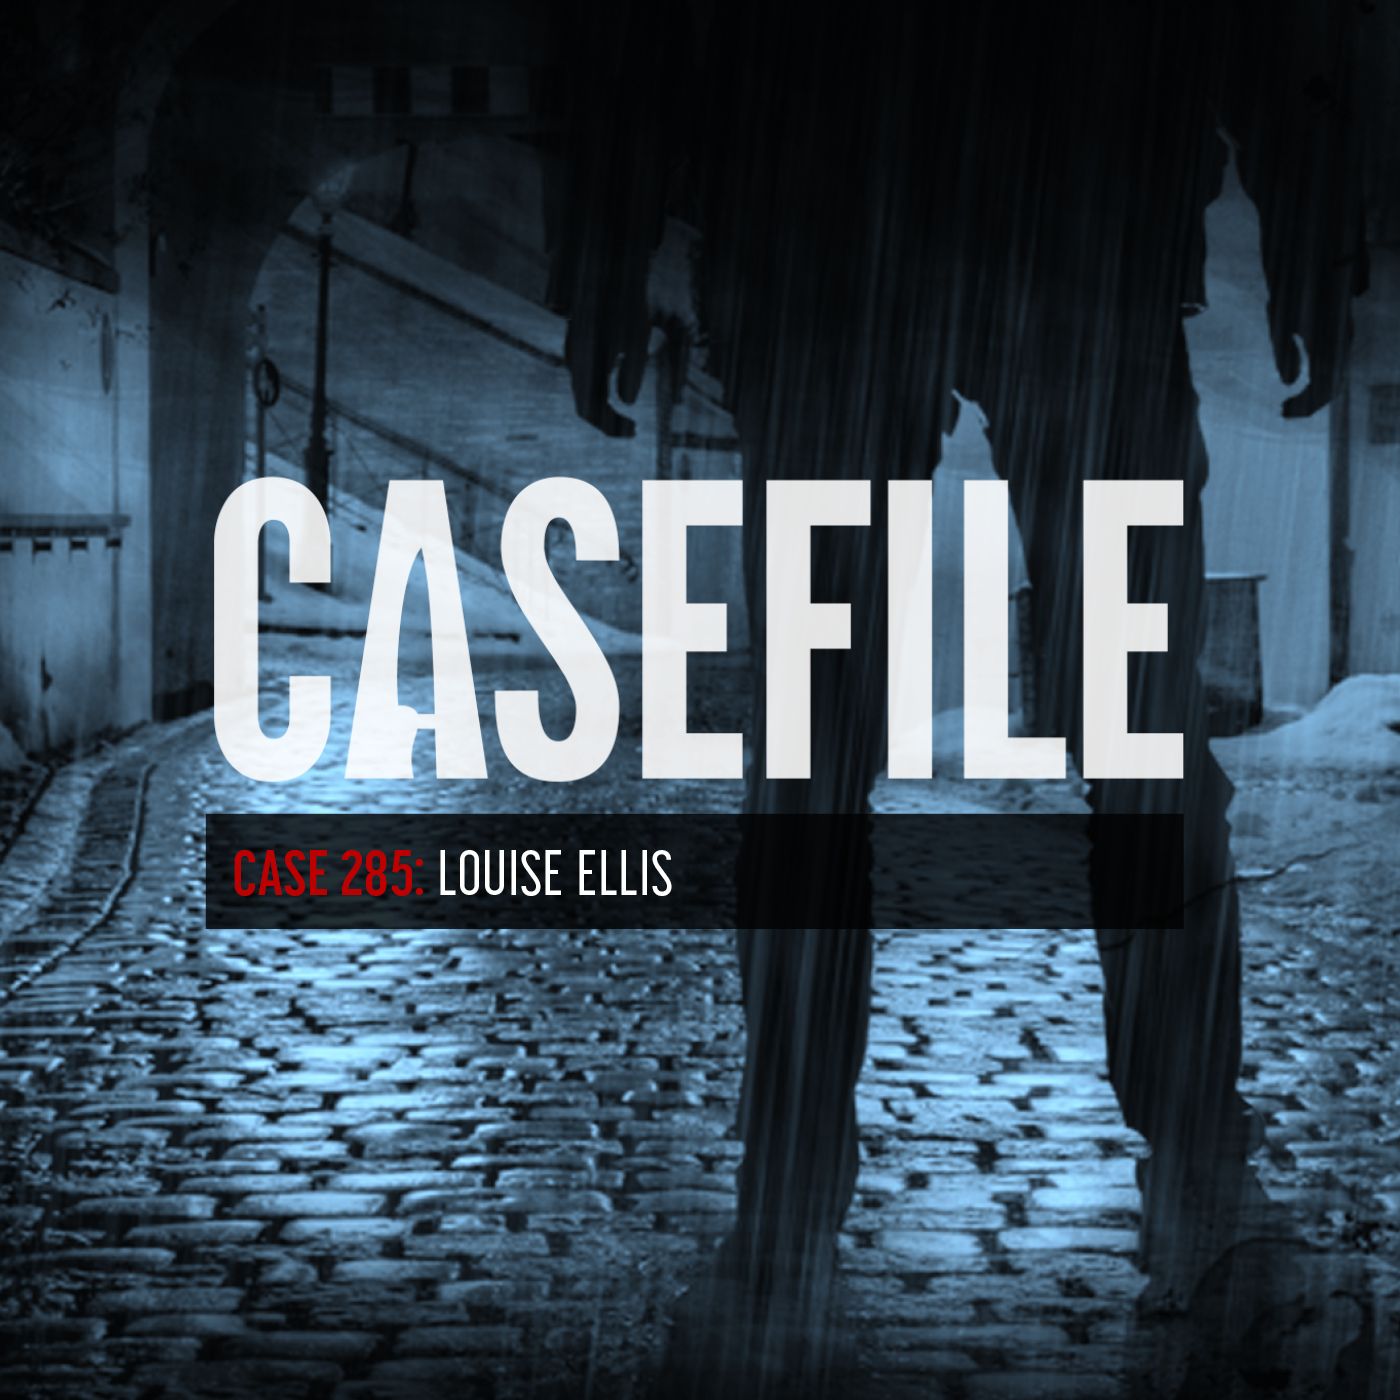 Case 285: Louise Ellis